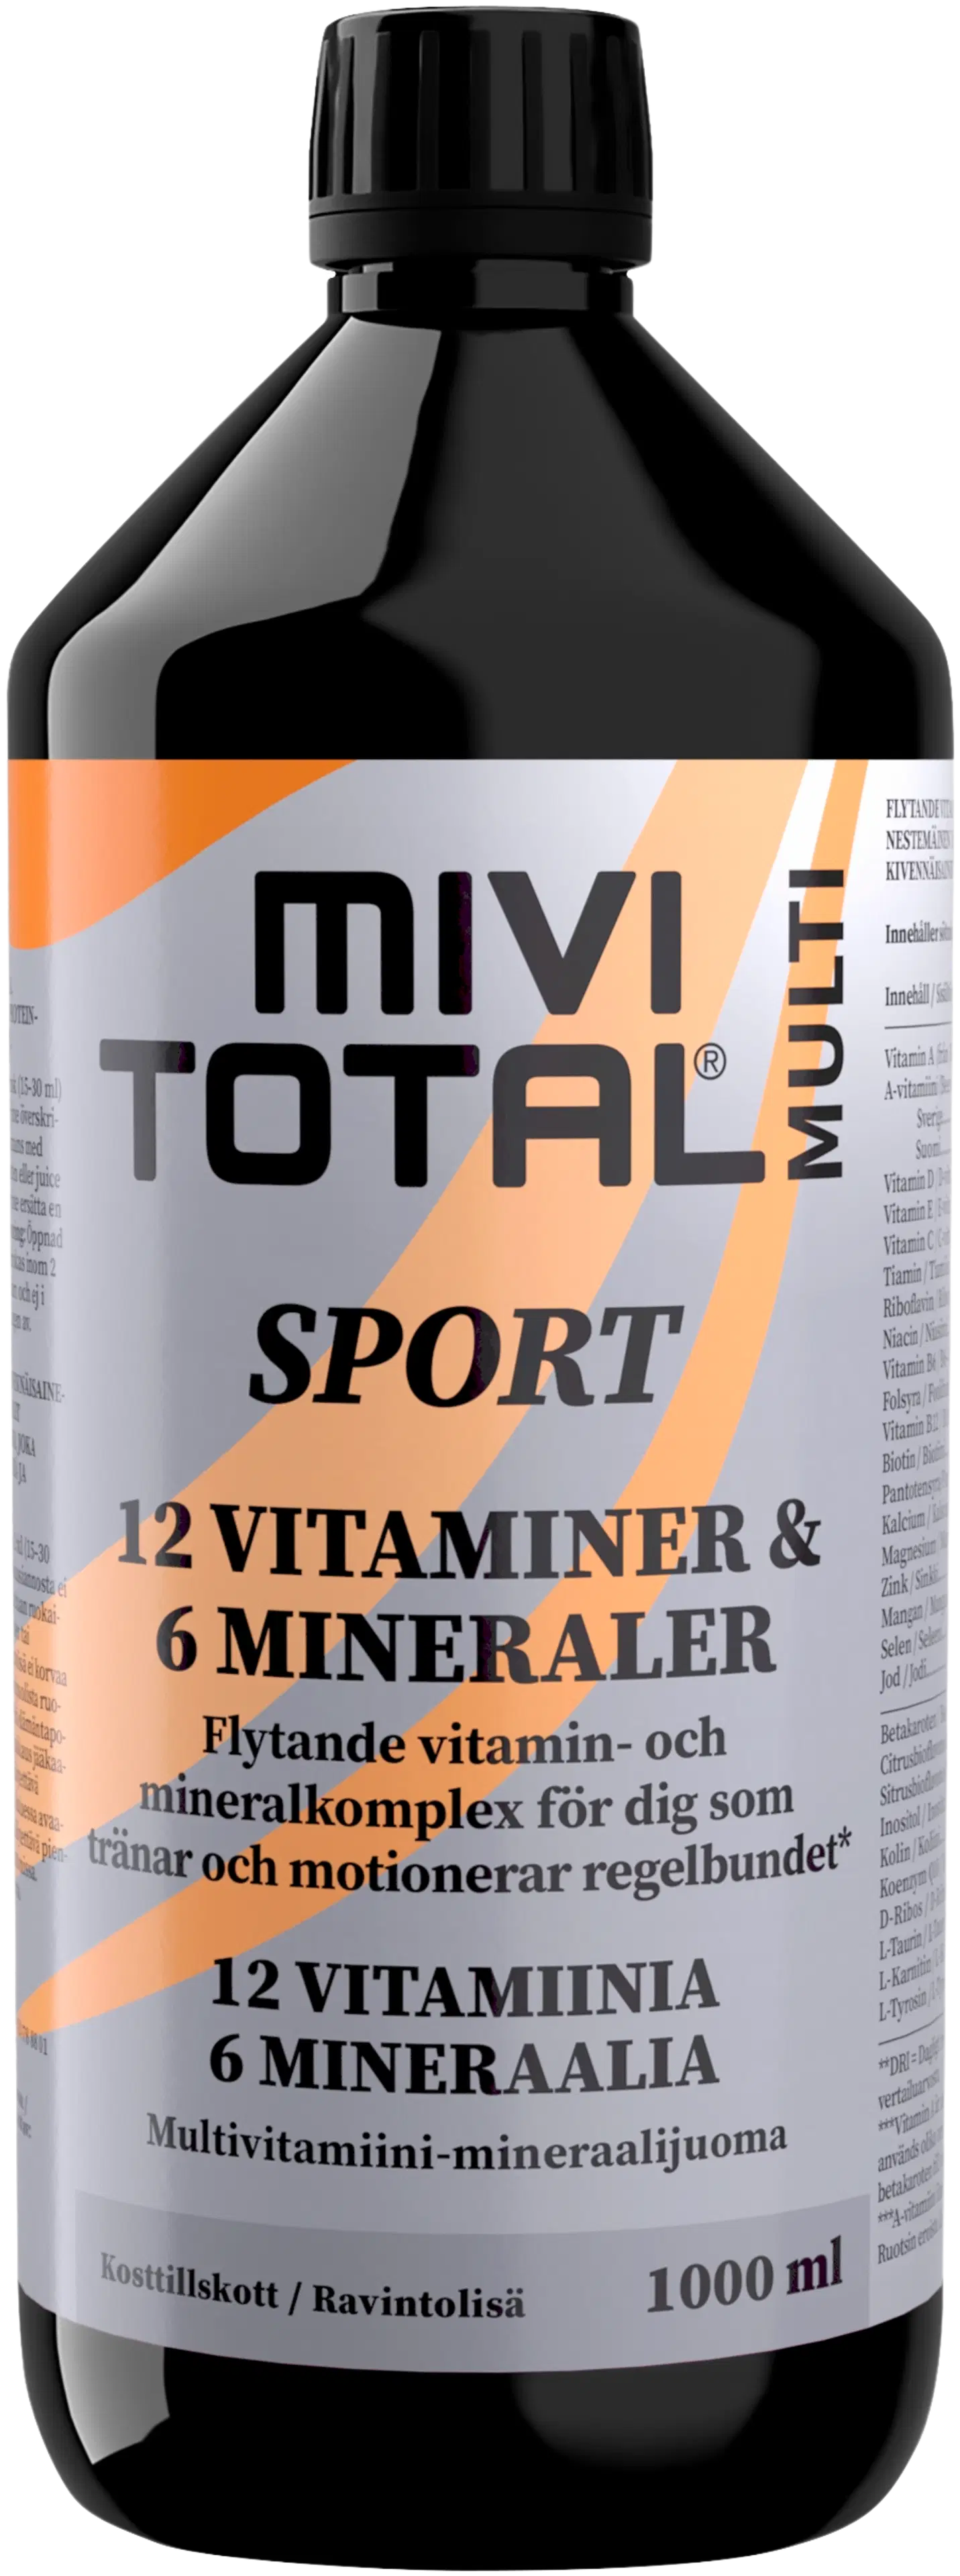 Mivitotal Sport vitamiini-kivennäisainevalmiste 1000ml